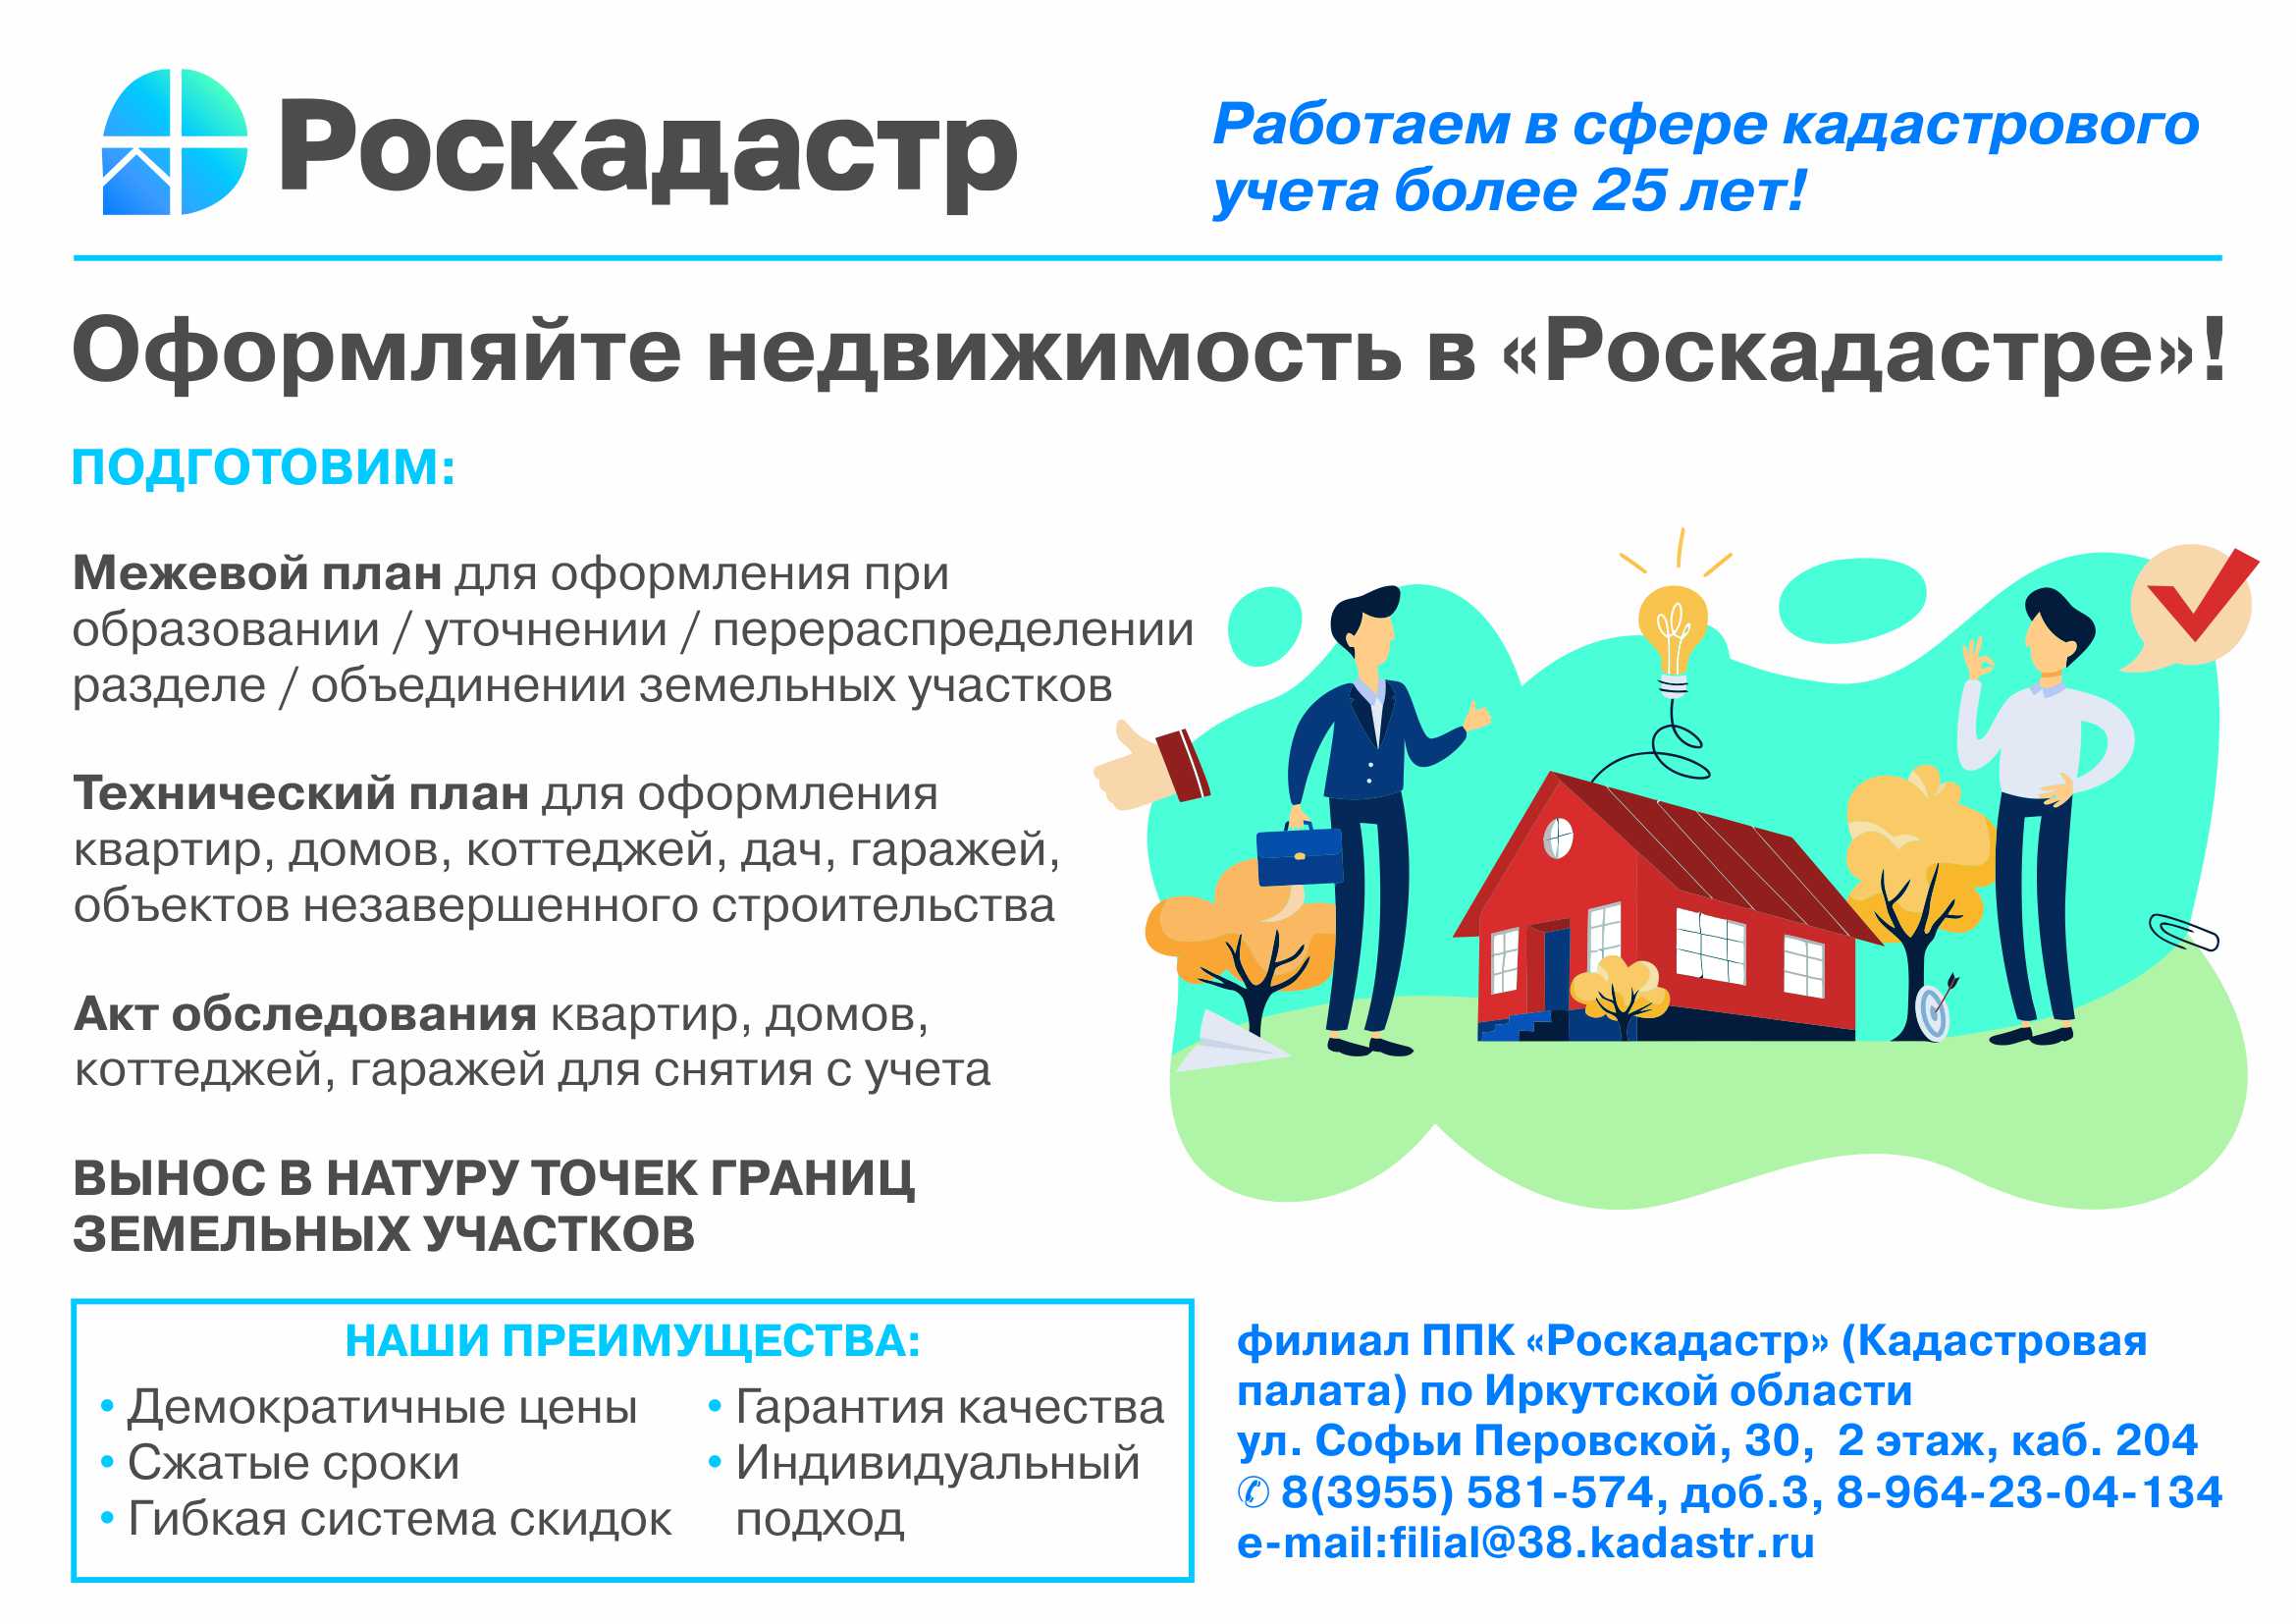 Официальный сайт администрации города Усолье-Сибирское - УправлениеРосреестра